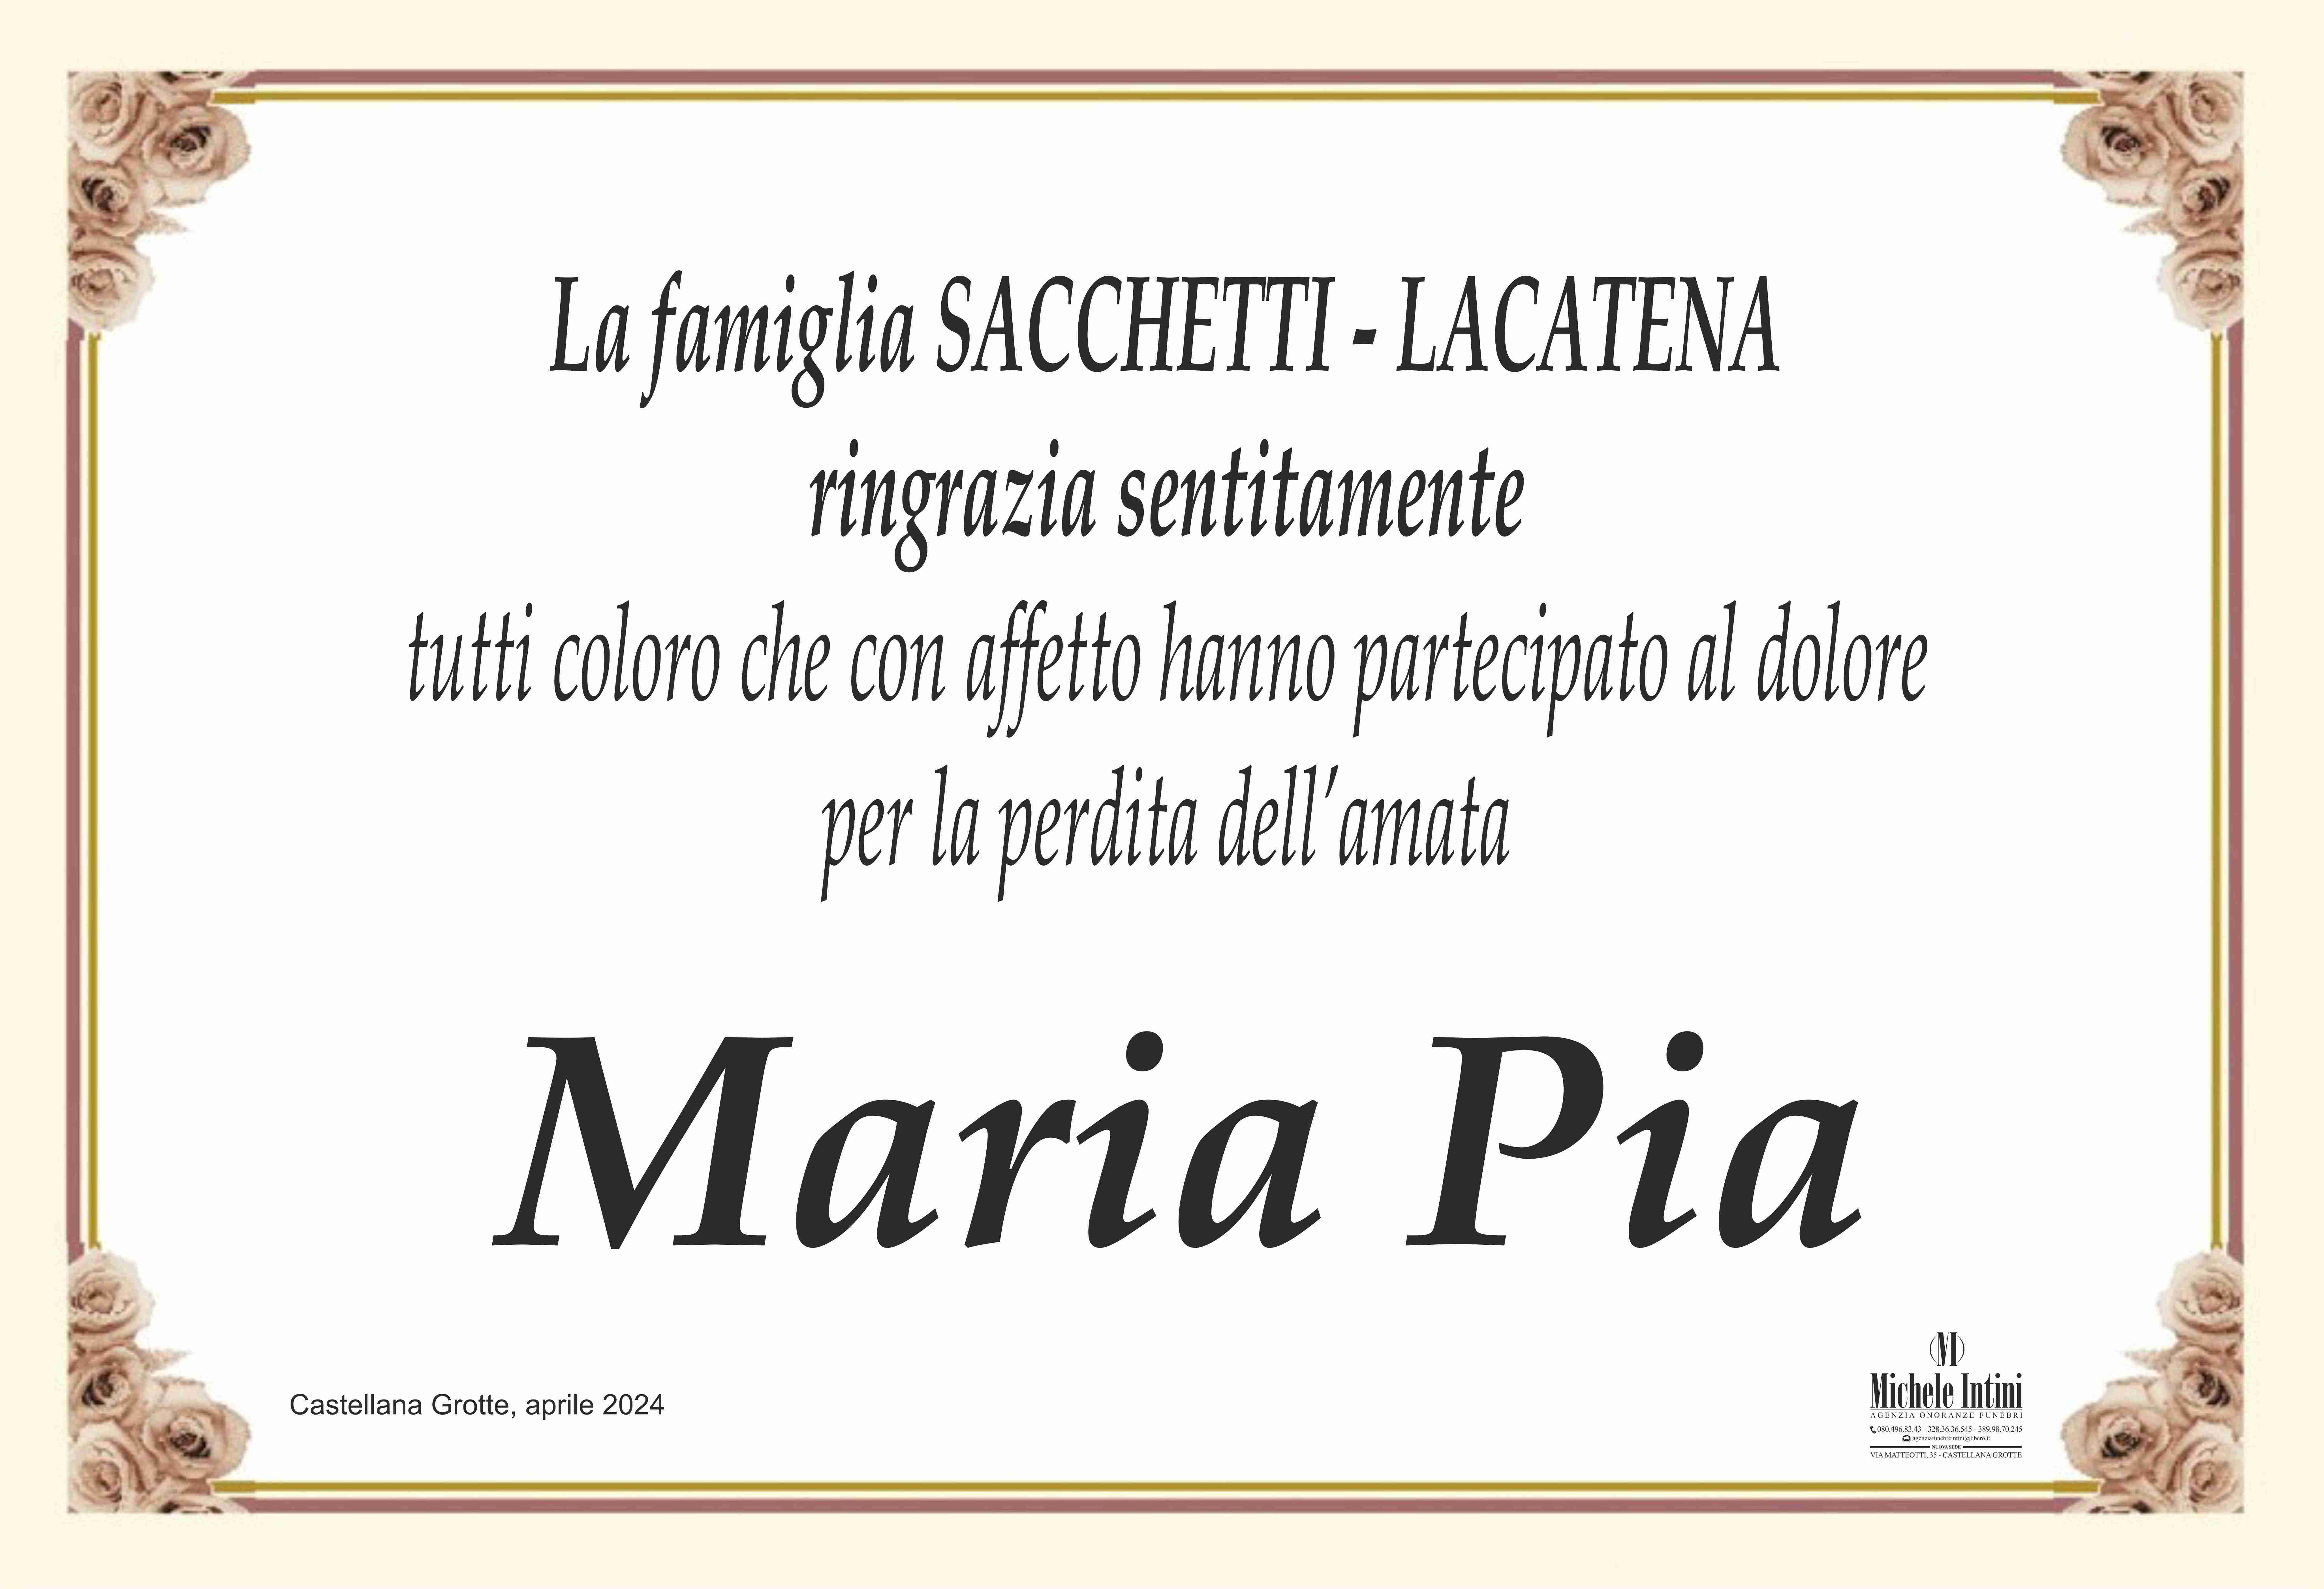 Filomena Maria Pia Lacatena